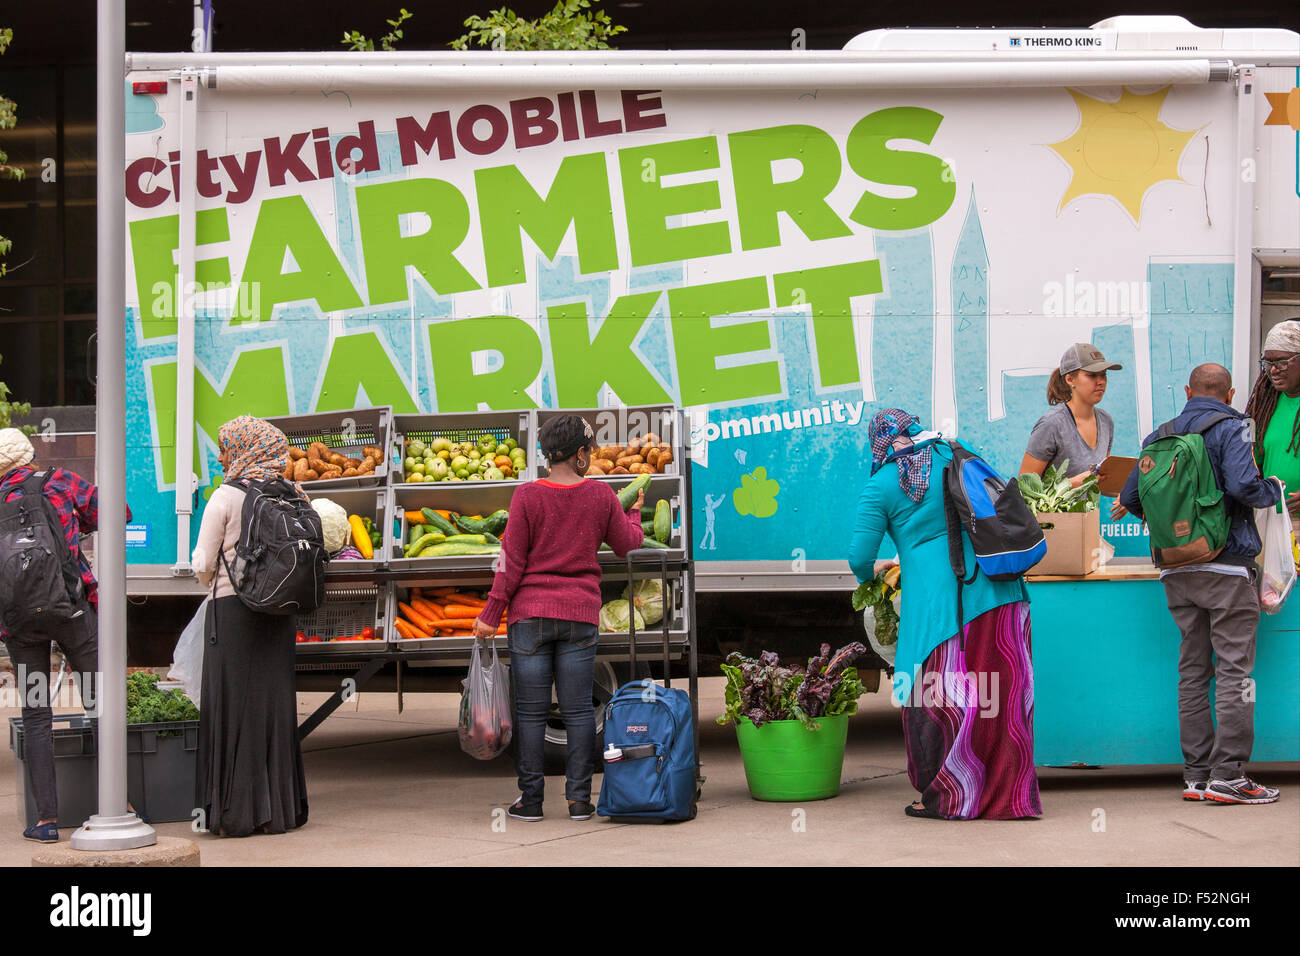 Minneapolis CityKid Mobile Farmers Market LKW Freiwilligen Verkauf von Produkten aus eigener Landwirtschaft zu einem vielfältigen Publikum. Stockfoto